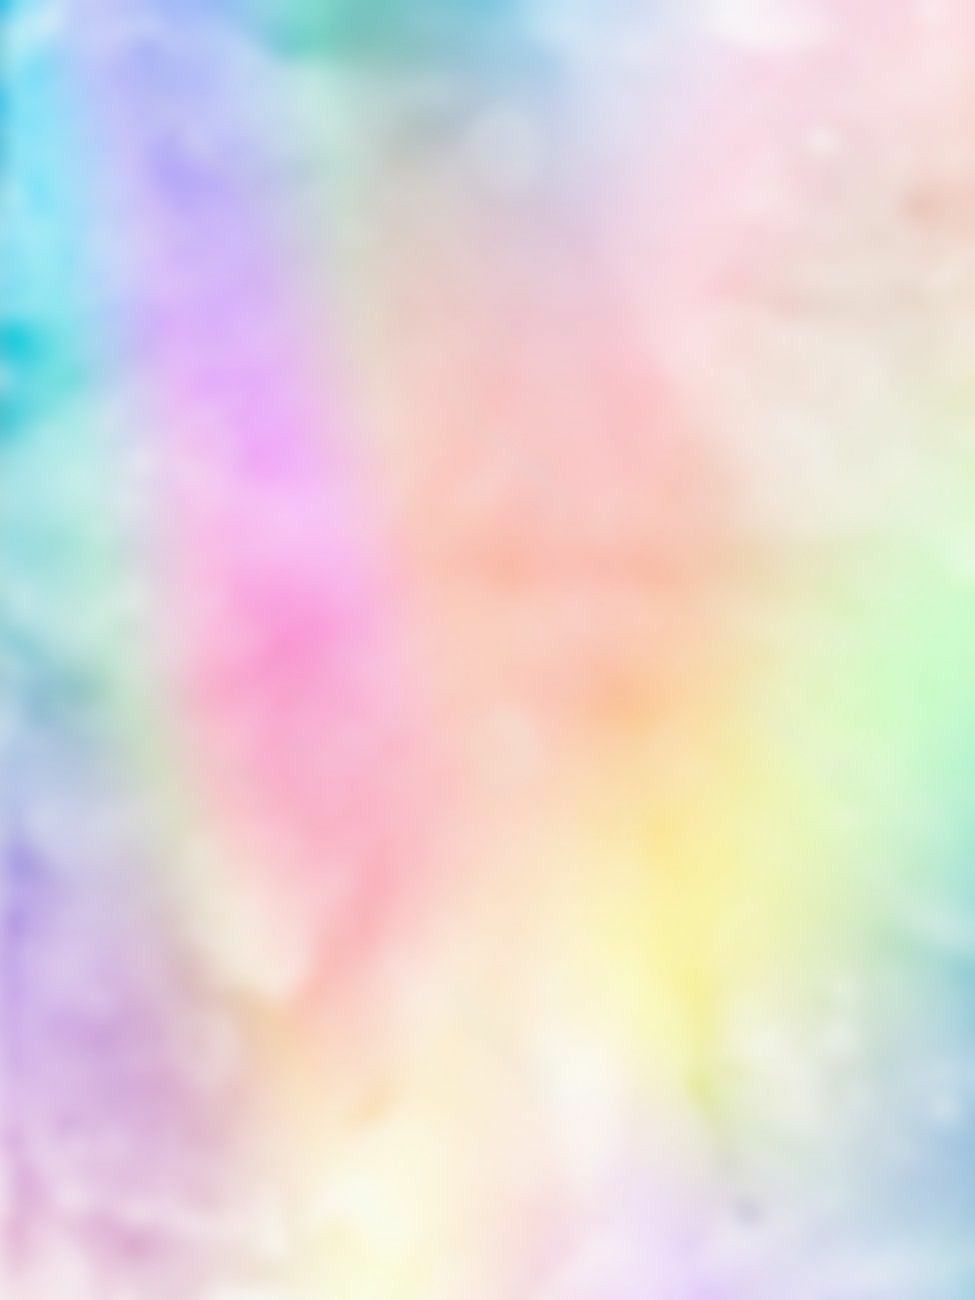 Color Splash PNG Transparent Images Free Download  Vector Files  Pngtree